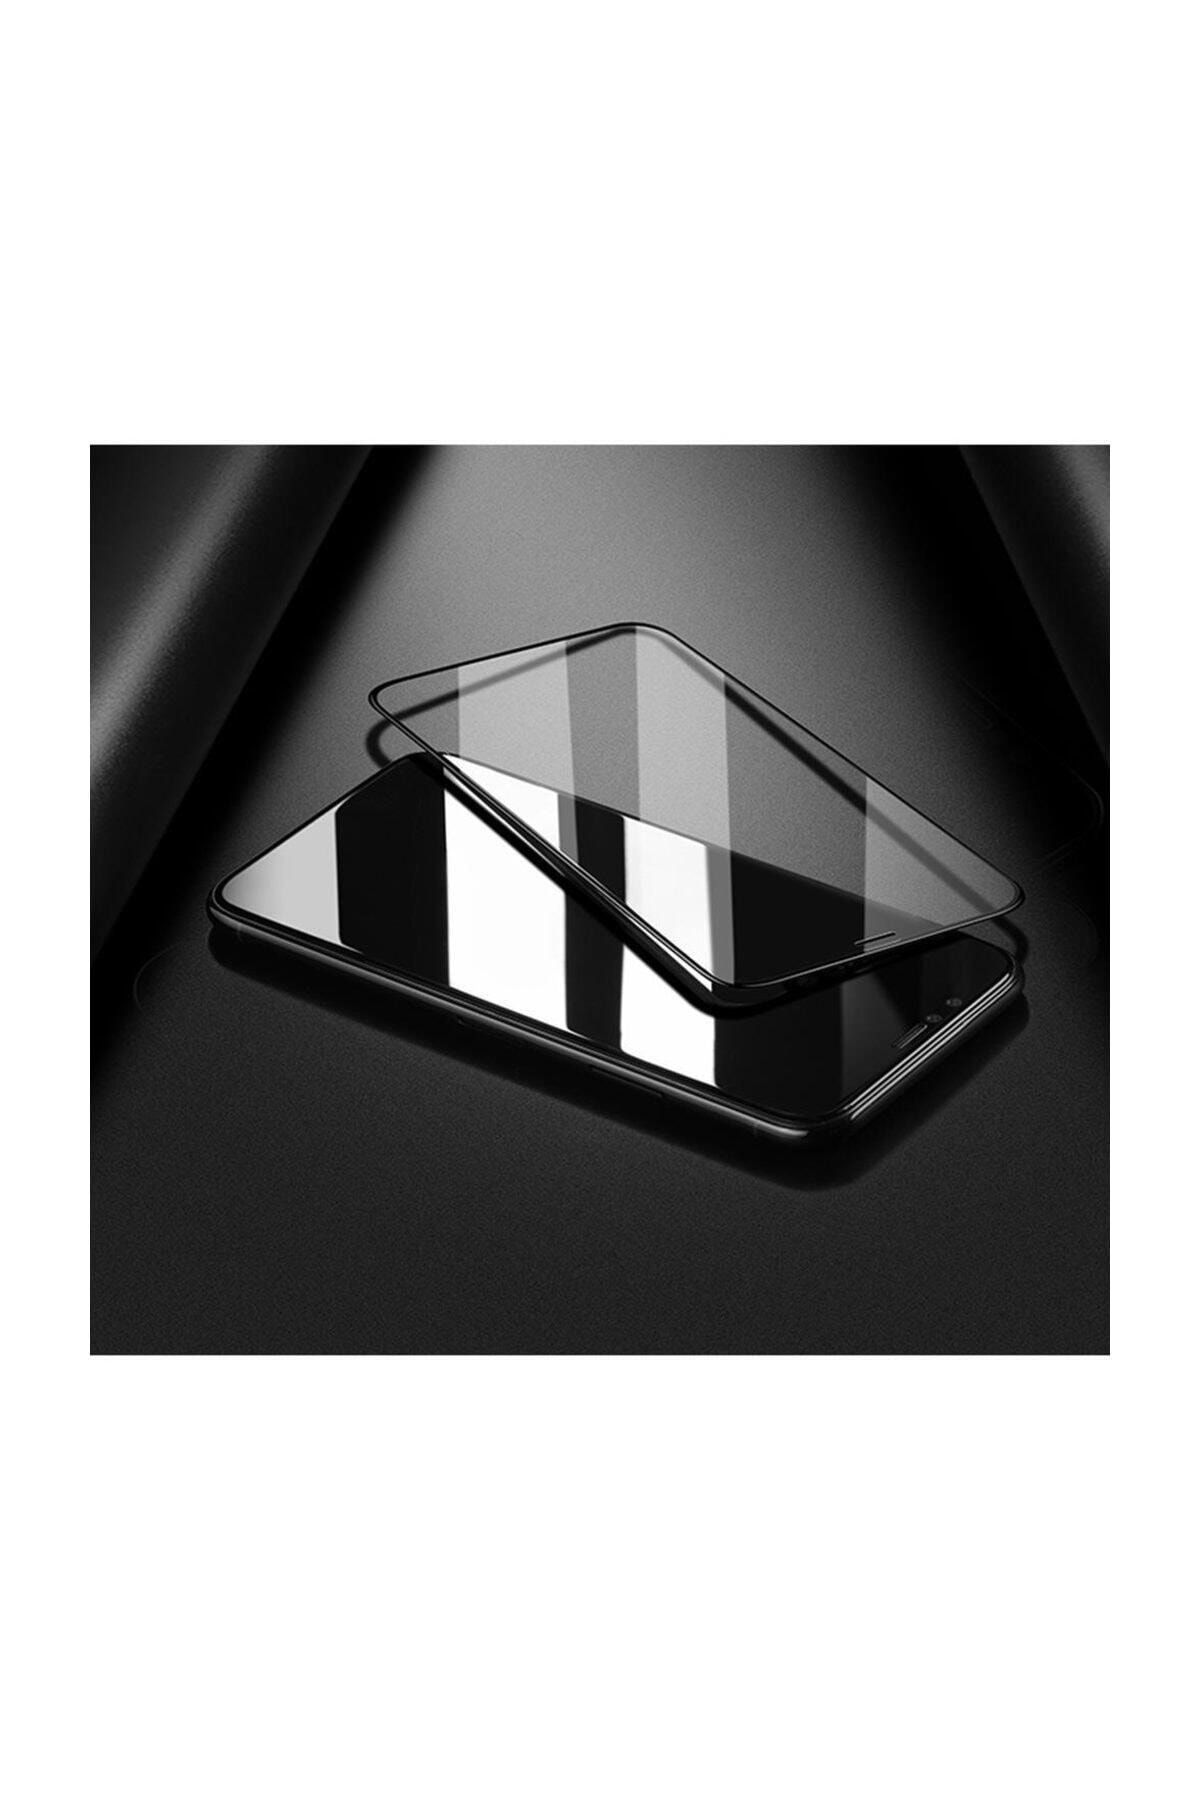 Vkozen Reeder M8 Go X Edition Uyumlu Tablet Ekran Koruyucu Nano Kırılmaz Cam